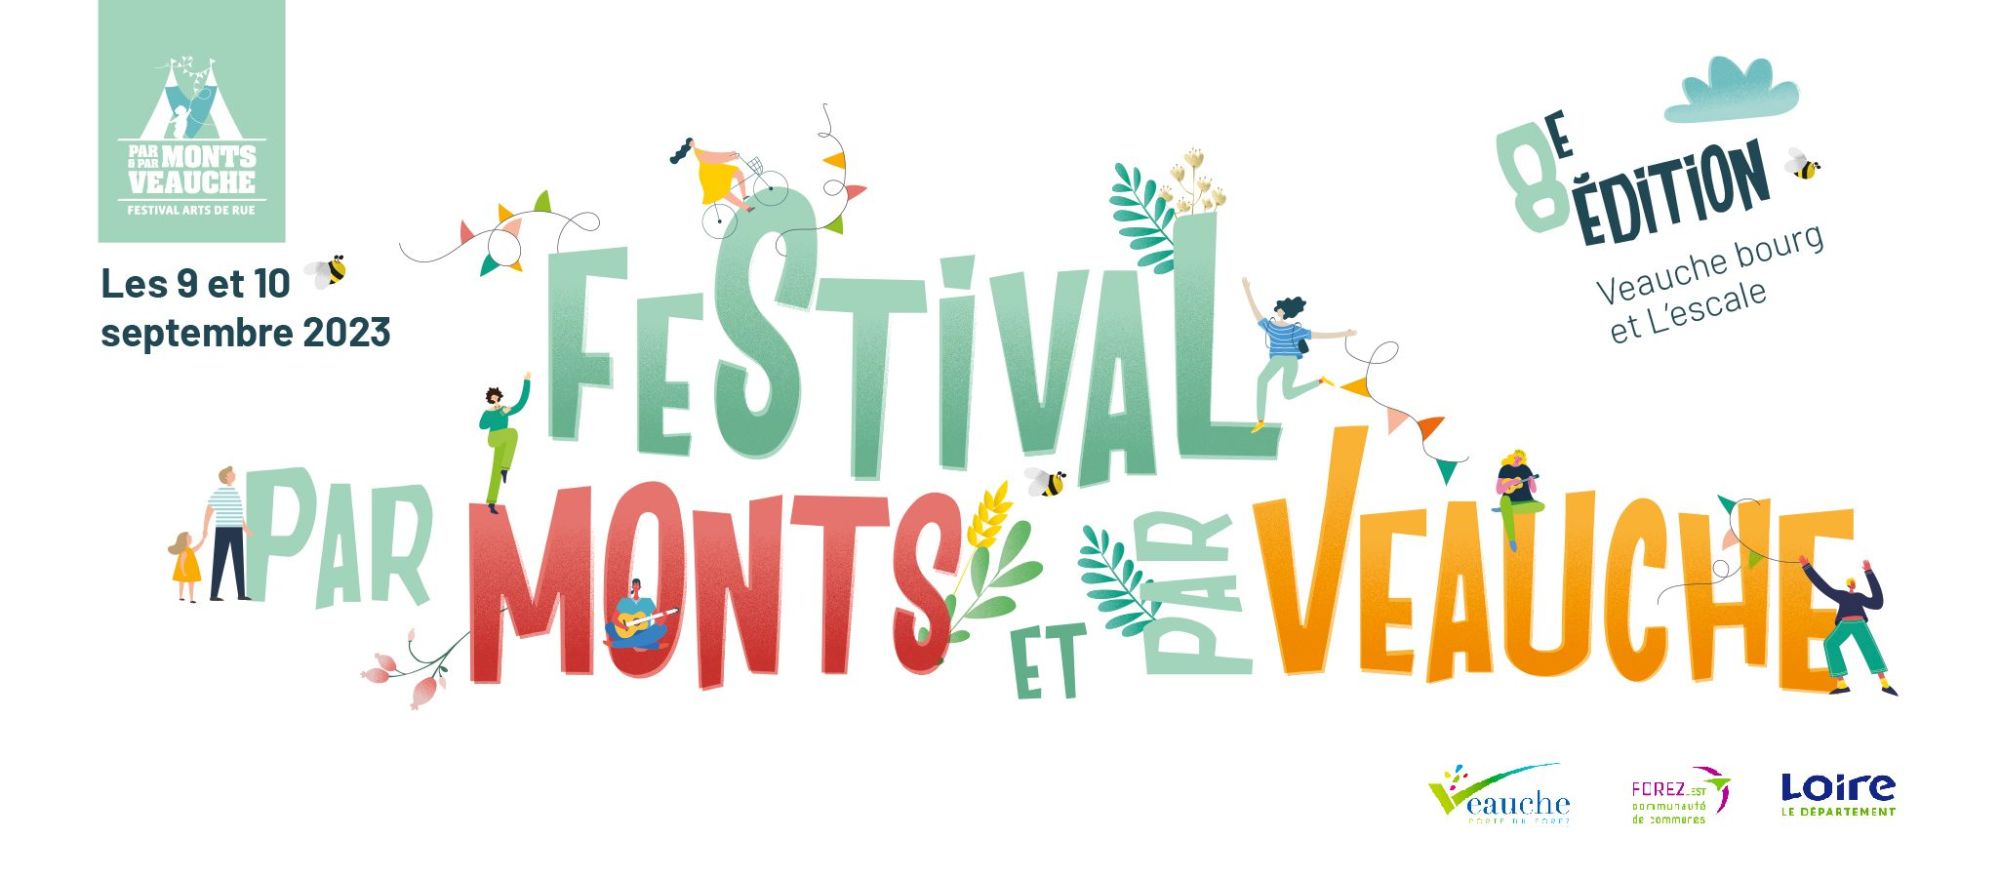 Festival - Par Monts et par Veauche